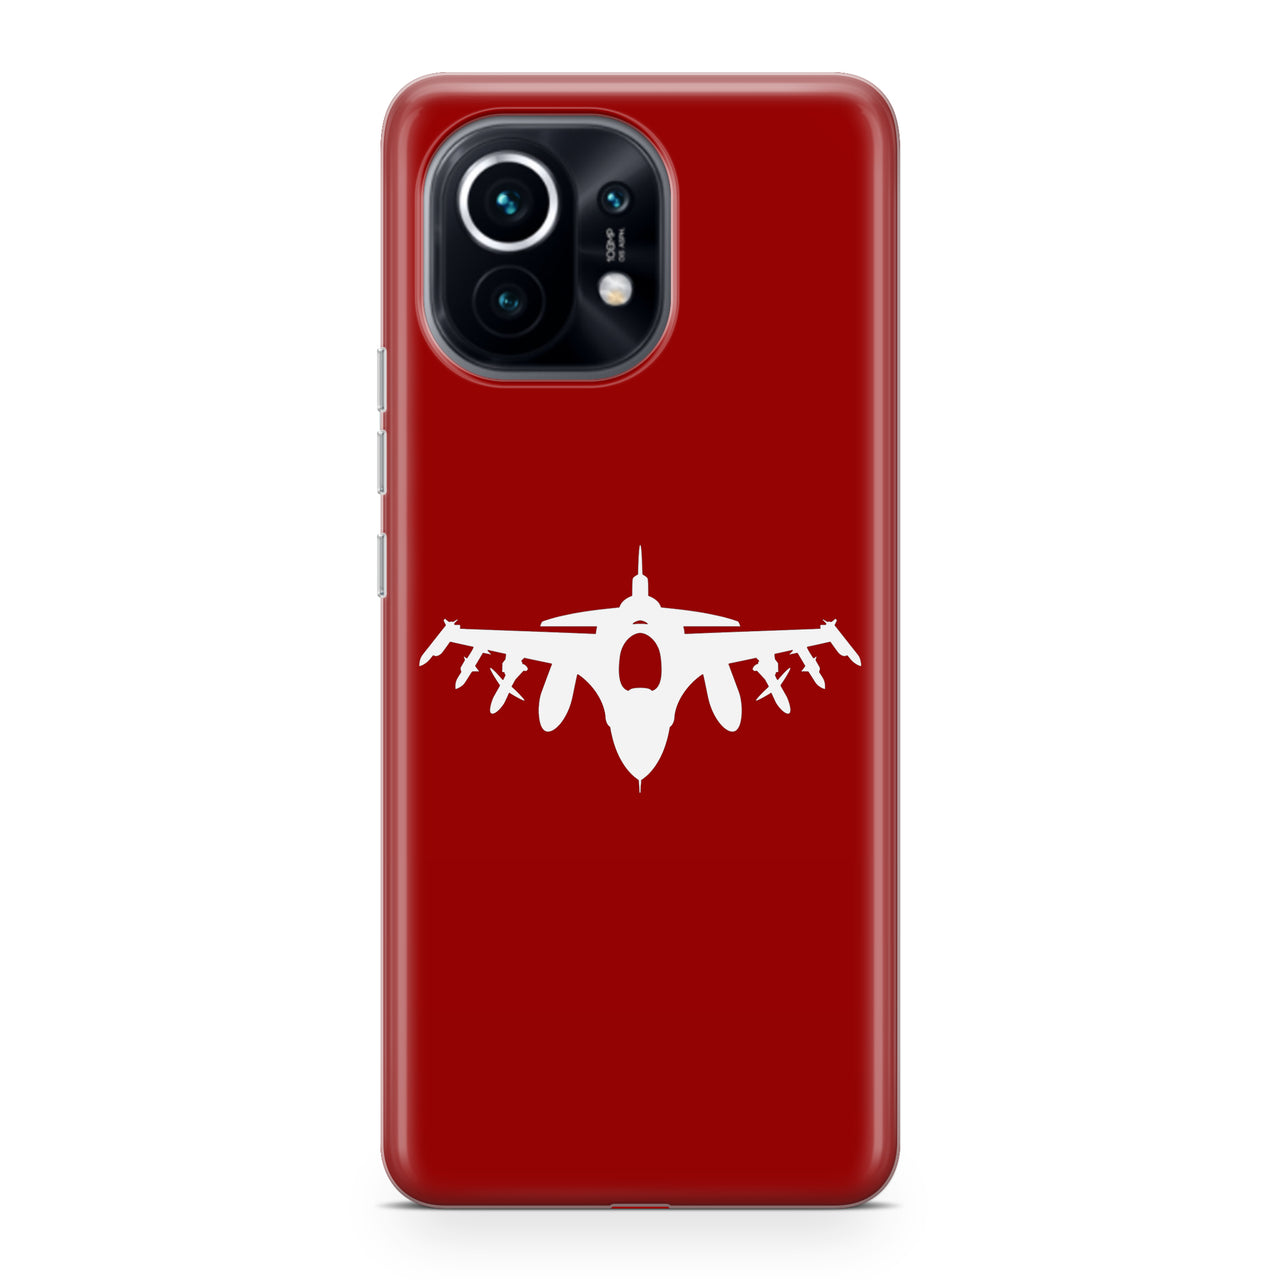 Fighting Falcon F16 Silhouette Designed Xiaomi Cases